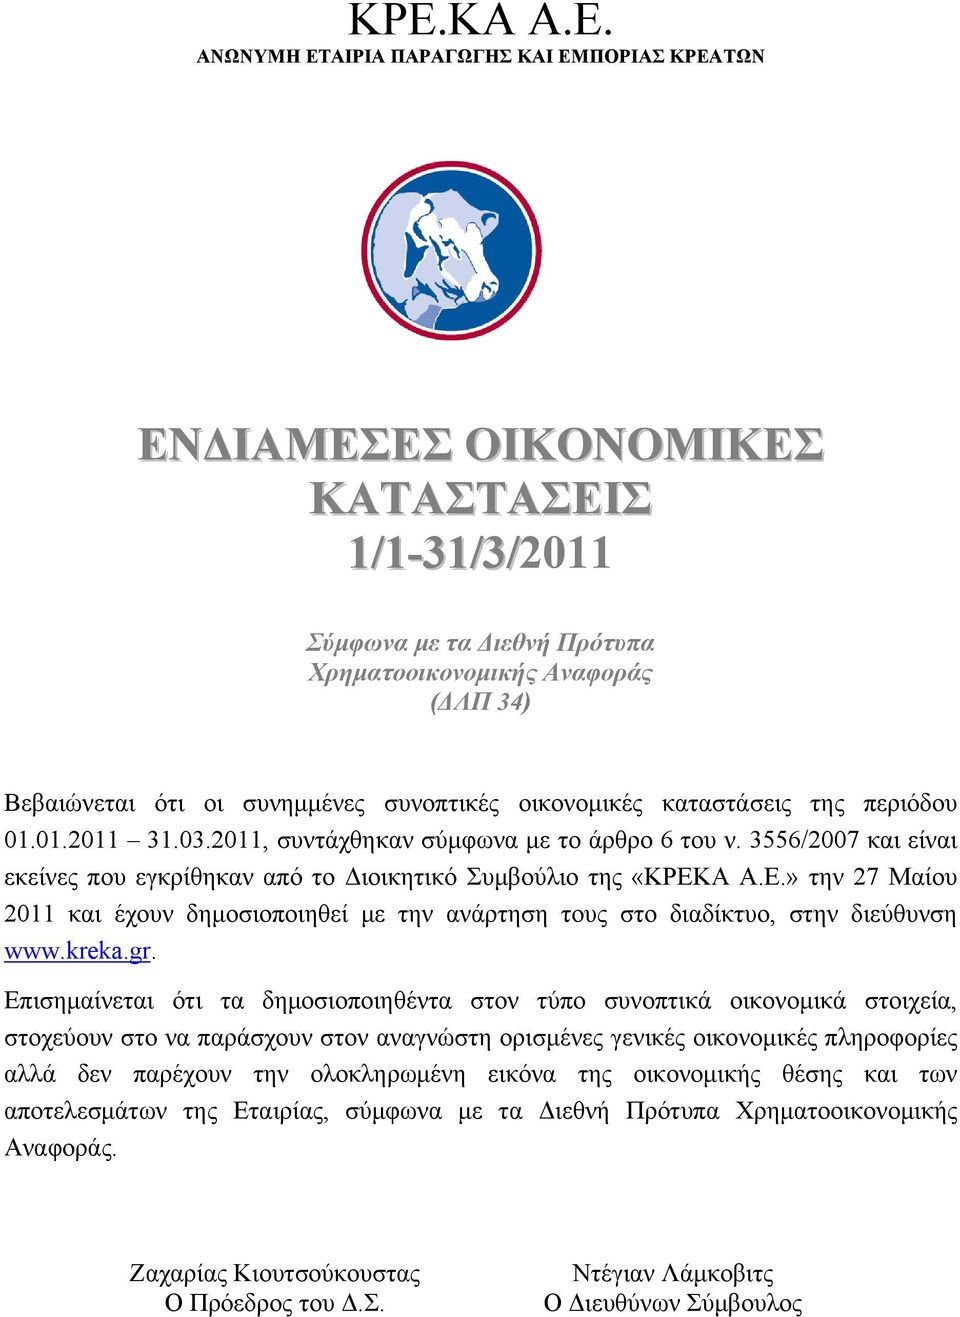 3556/2007 και είναι εκείνες που εγκρίθηκαν από το Διοικητικό Συμβούλιο της «ΚΡΕΚΑ Α.Ε.» την 27 Μαίου 2011 και έχουν δημοσιοποιηθεί με την ανάρτηση τους στο διαδίκτυο, στην διεύθυνση www.kreka.gr.